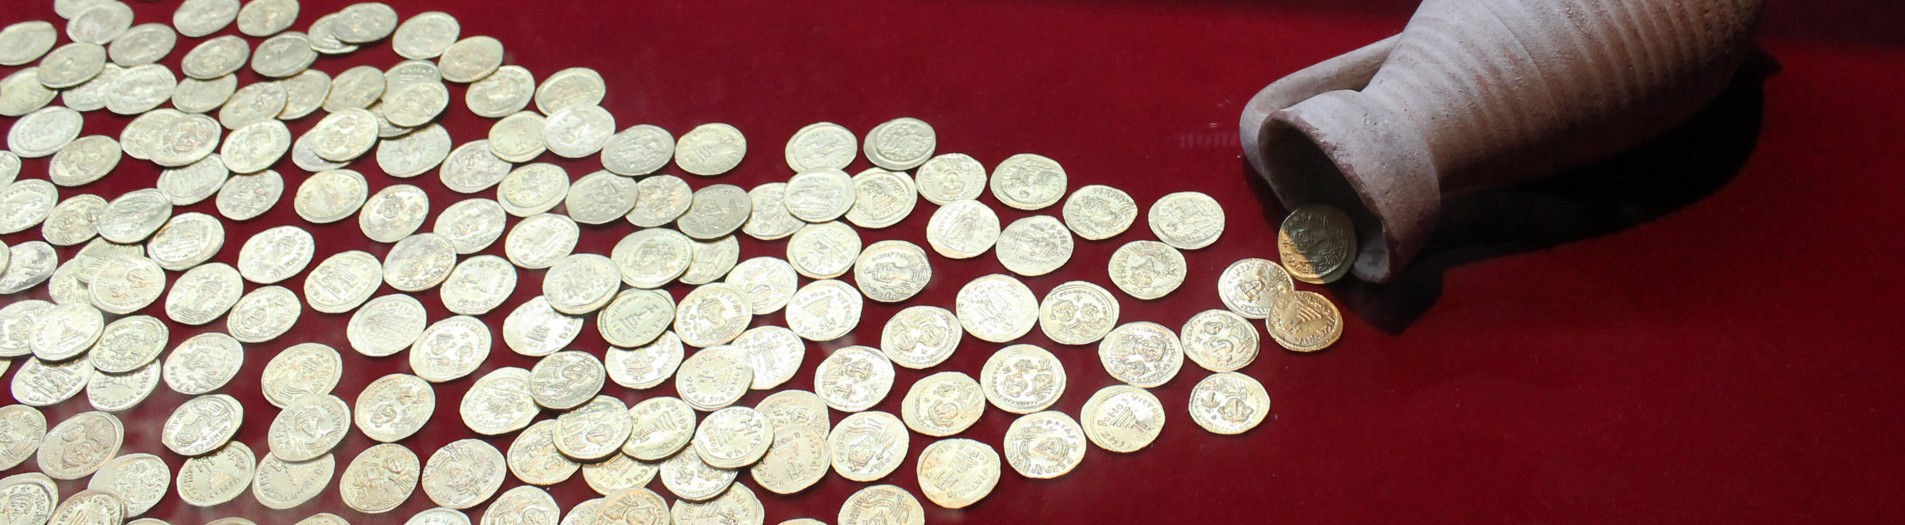 Les trésors monétaires trouvés en Tunisie